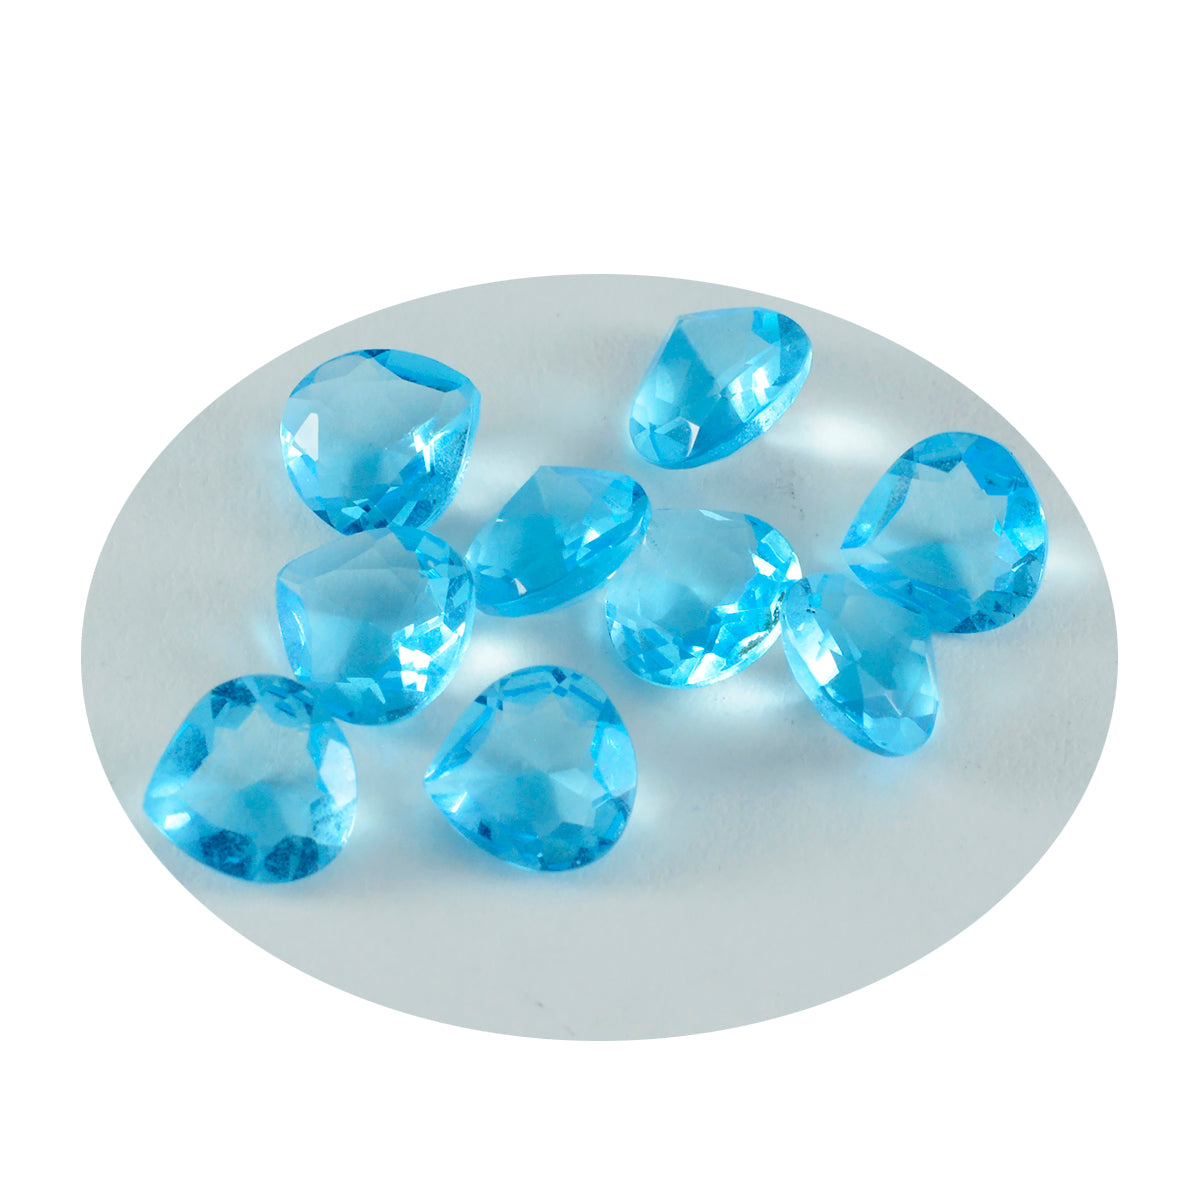 riyogems 1 шт. синий топаз cz ограненный 4x4 мм в форме сердца красивые качественные драгоценные камни